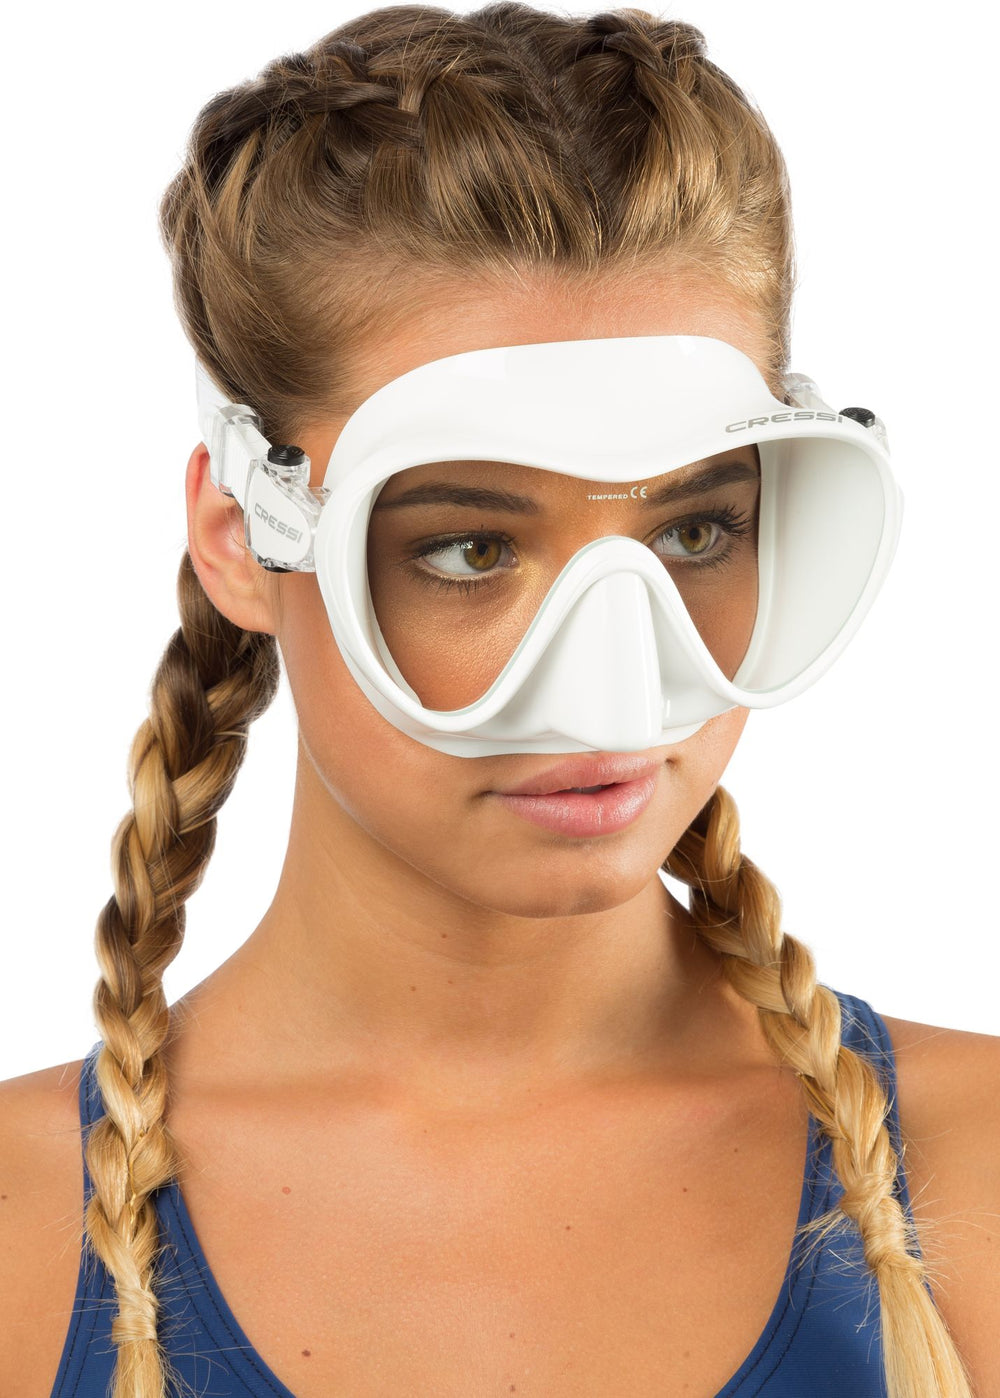 Shop Cressi Z1 Mask - Frameless Online | Divers Supply